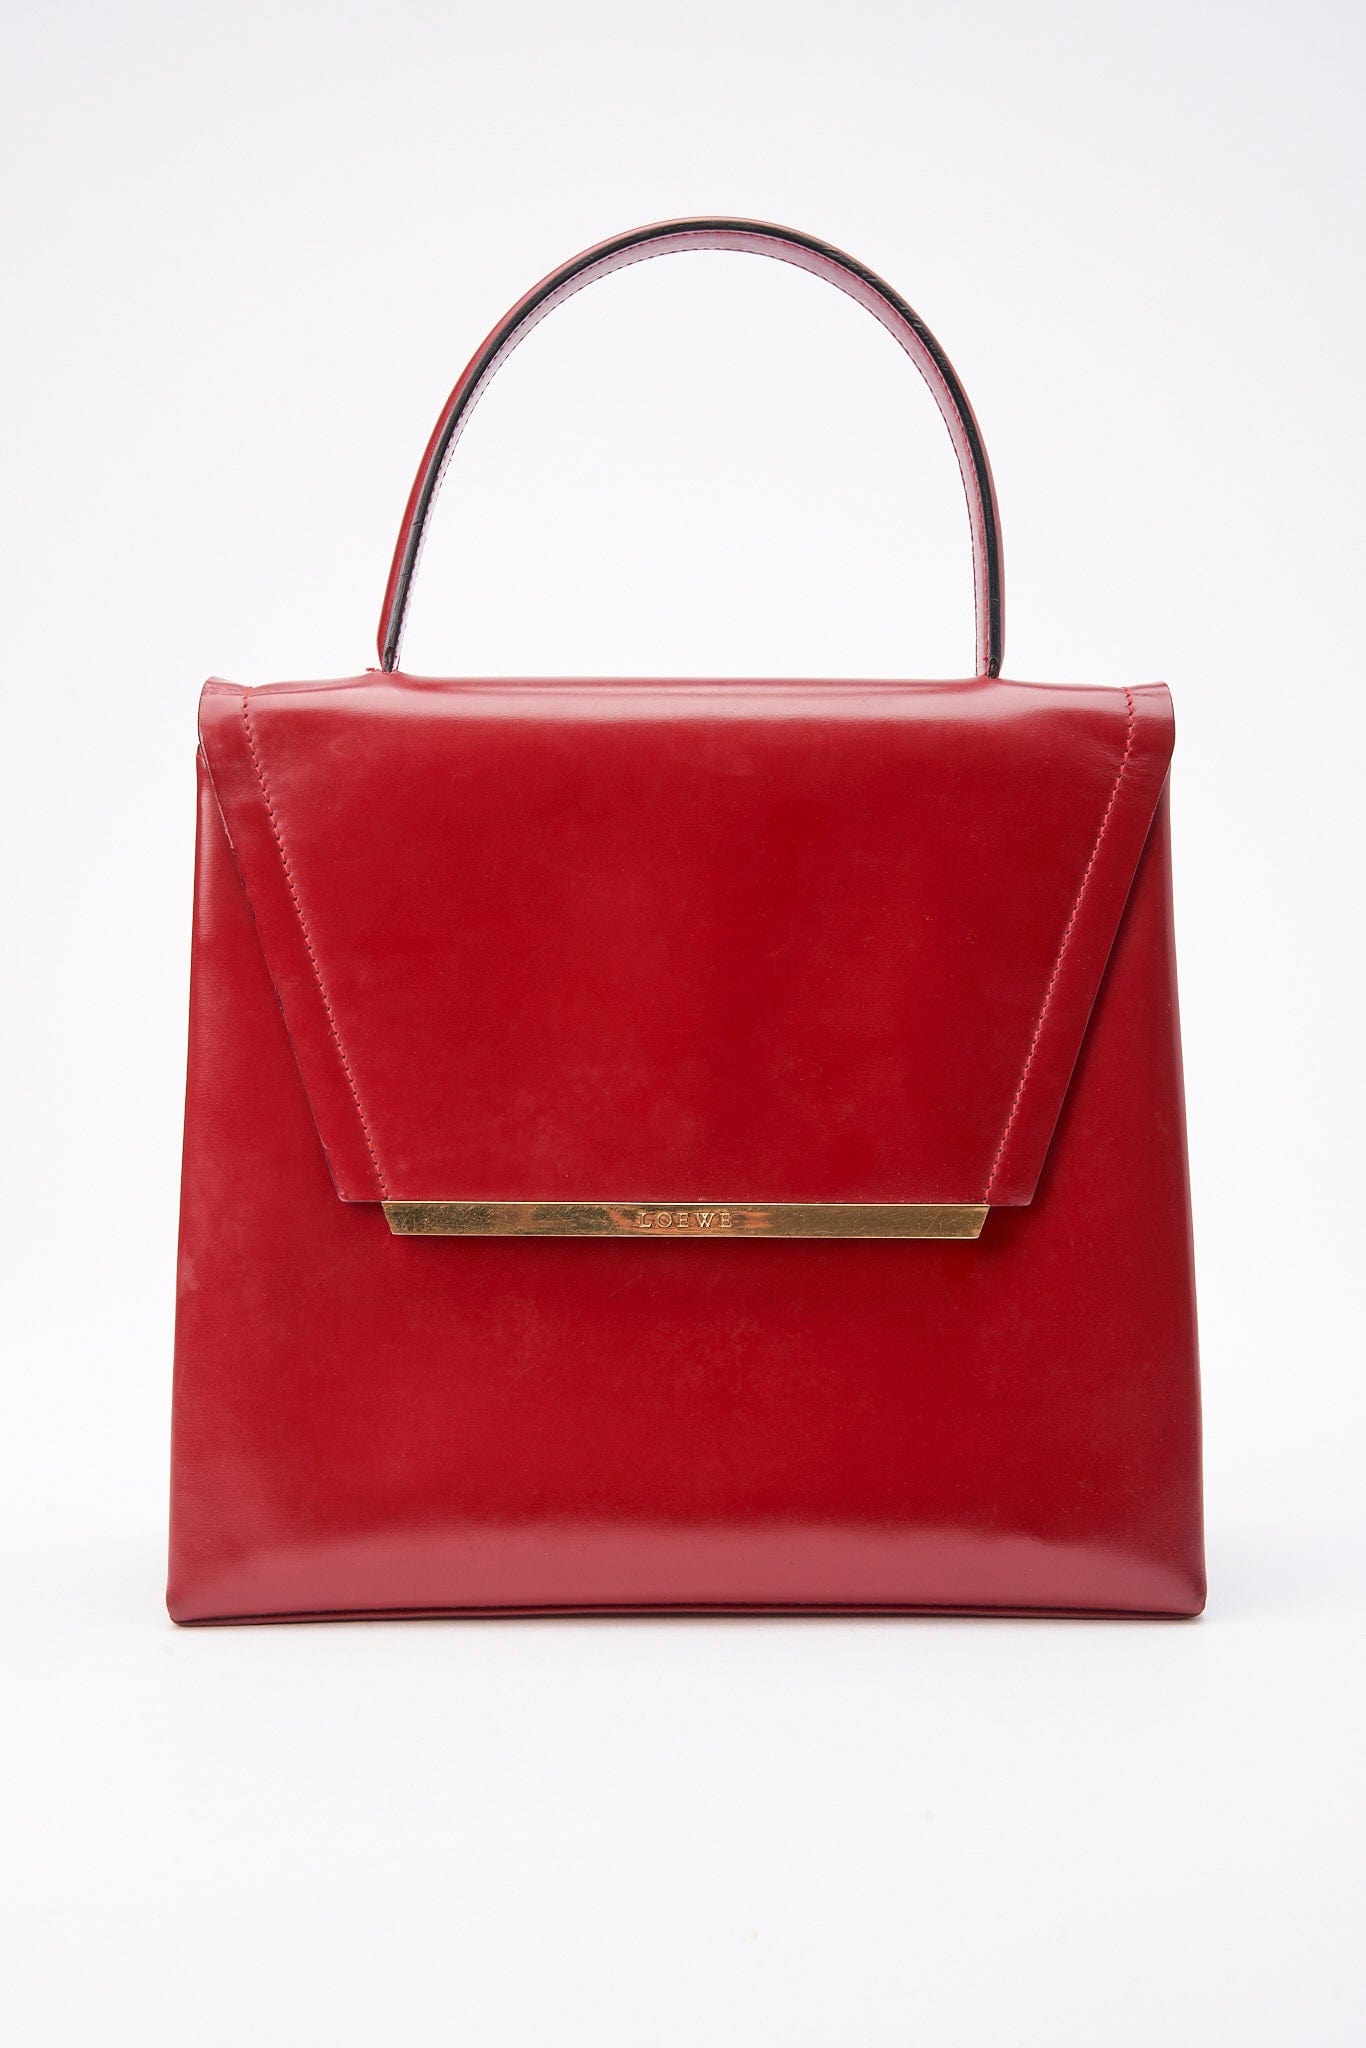 Vintage Loewe Red Leather Top Handle Bag